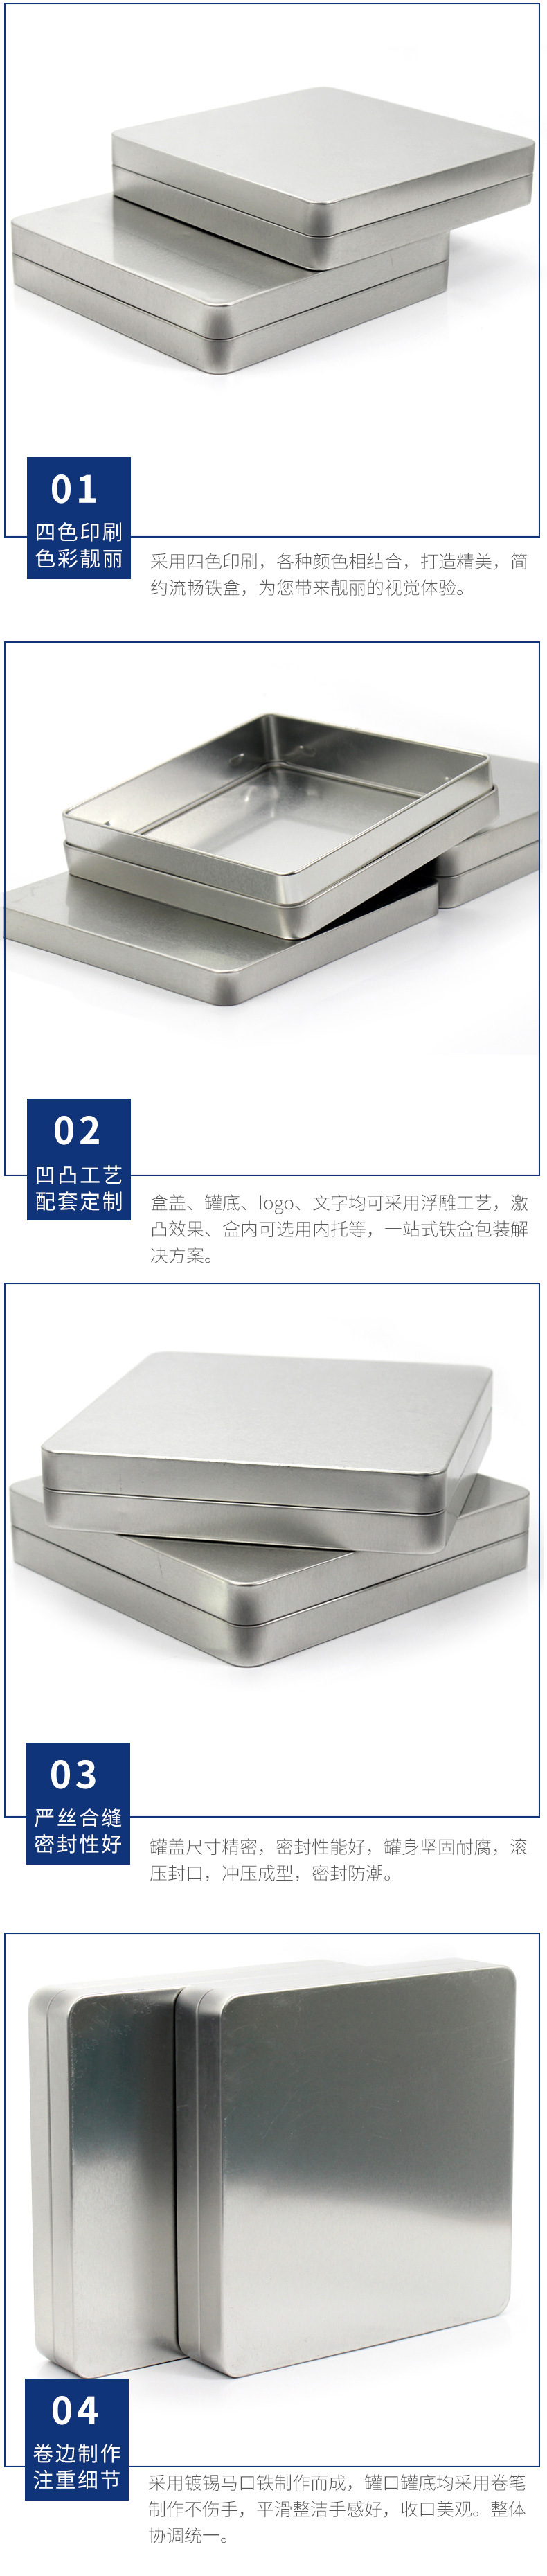 古树普洱茶铁盒供应厂家 银色普洱茶饼铁盒定制 方形纯色茶叶铁盒示例图14